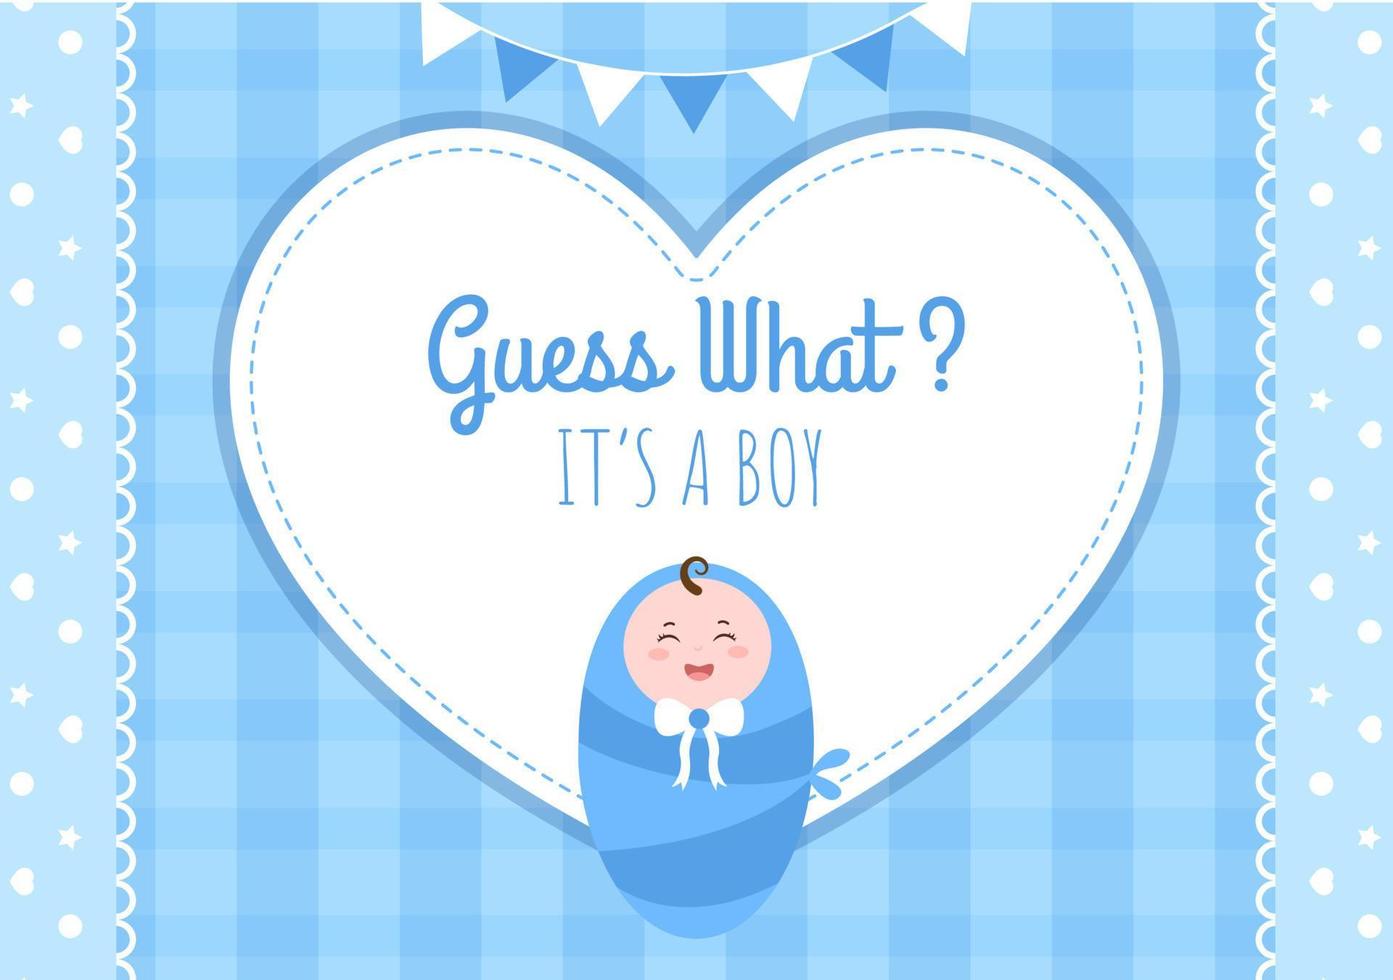 födelsefoto är det en pojke med en babybild och blå bakgrundsillustration för gratulationskort eller skylt vektor